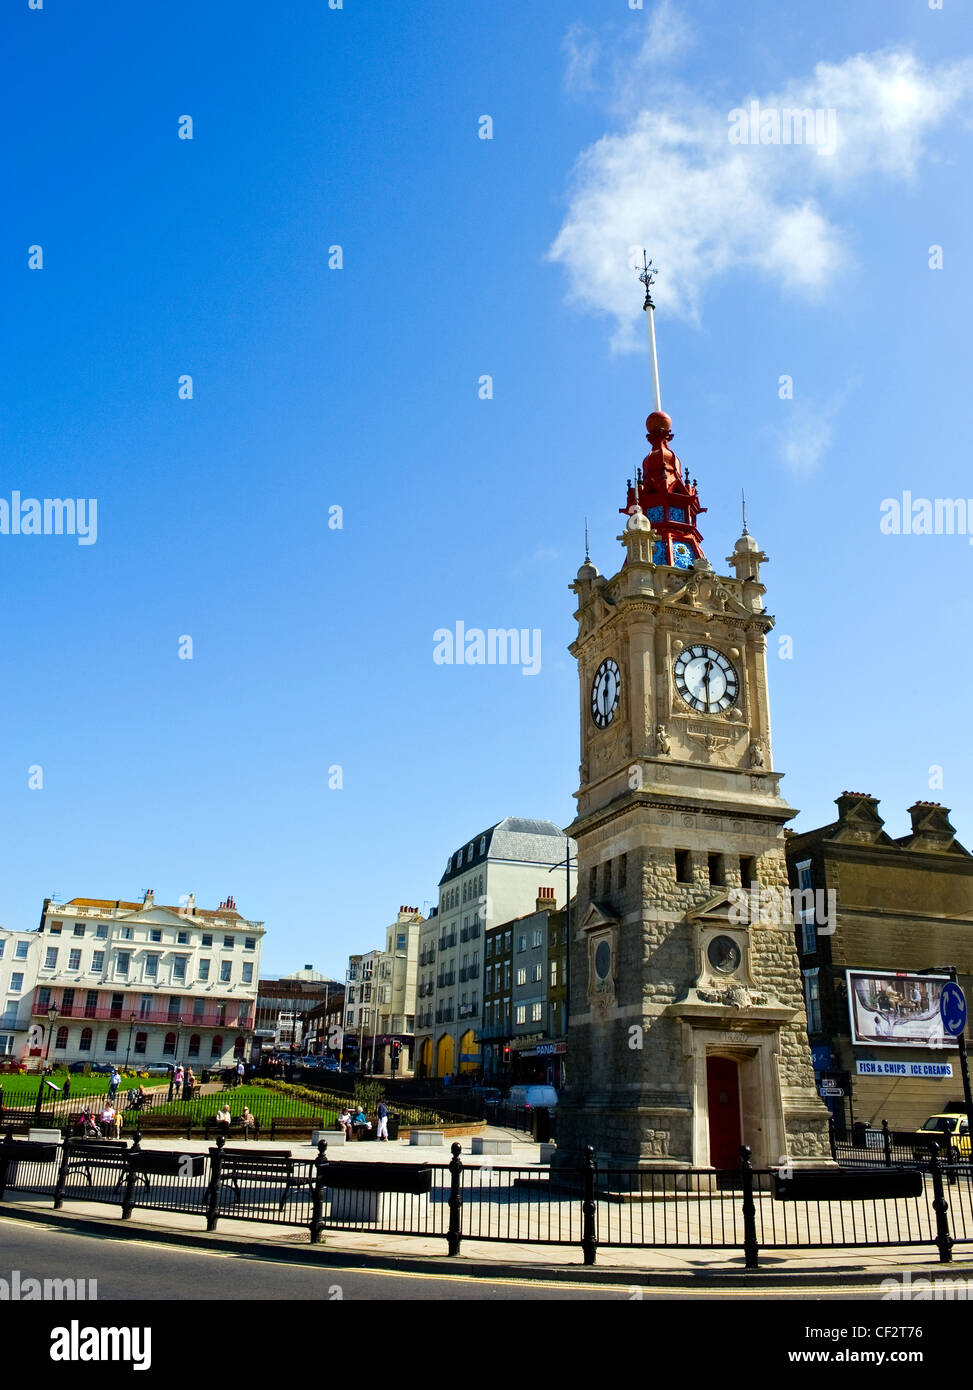 Margate Clock Tower, costruito nel 1887 per celebrare la Regina Vittoria per il Giubileo d oro, sul lungomare. Foto Stock